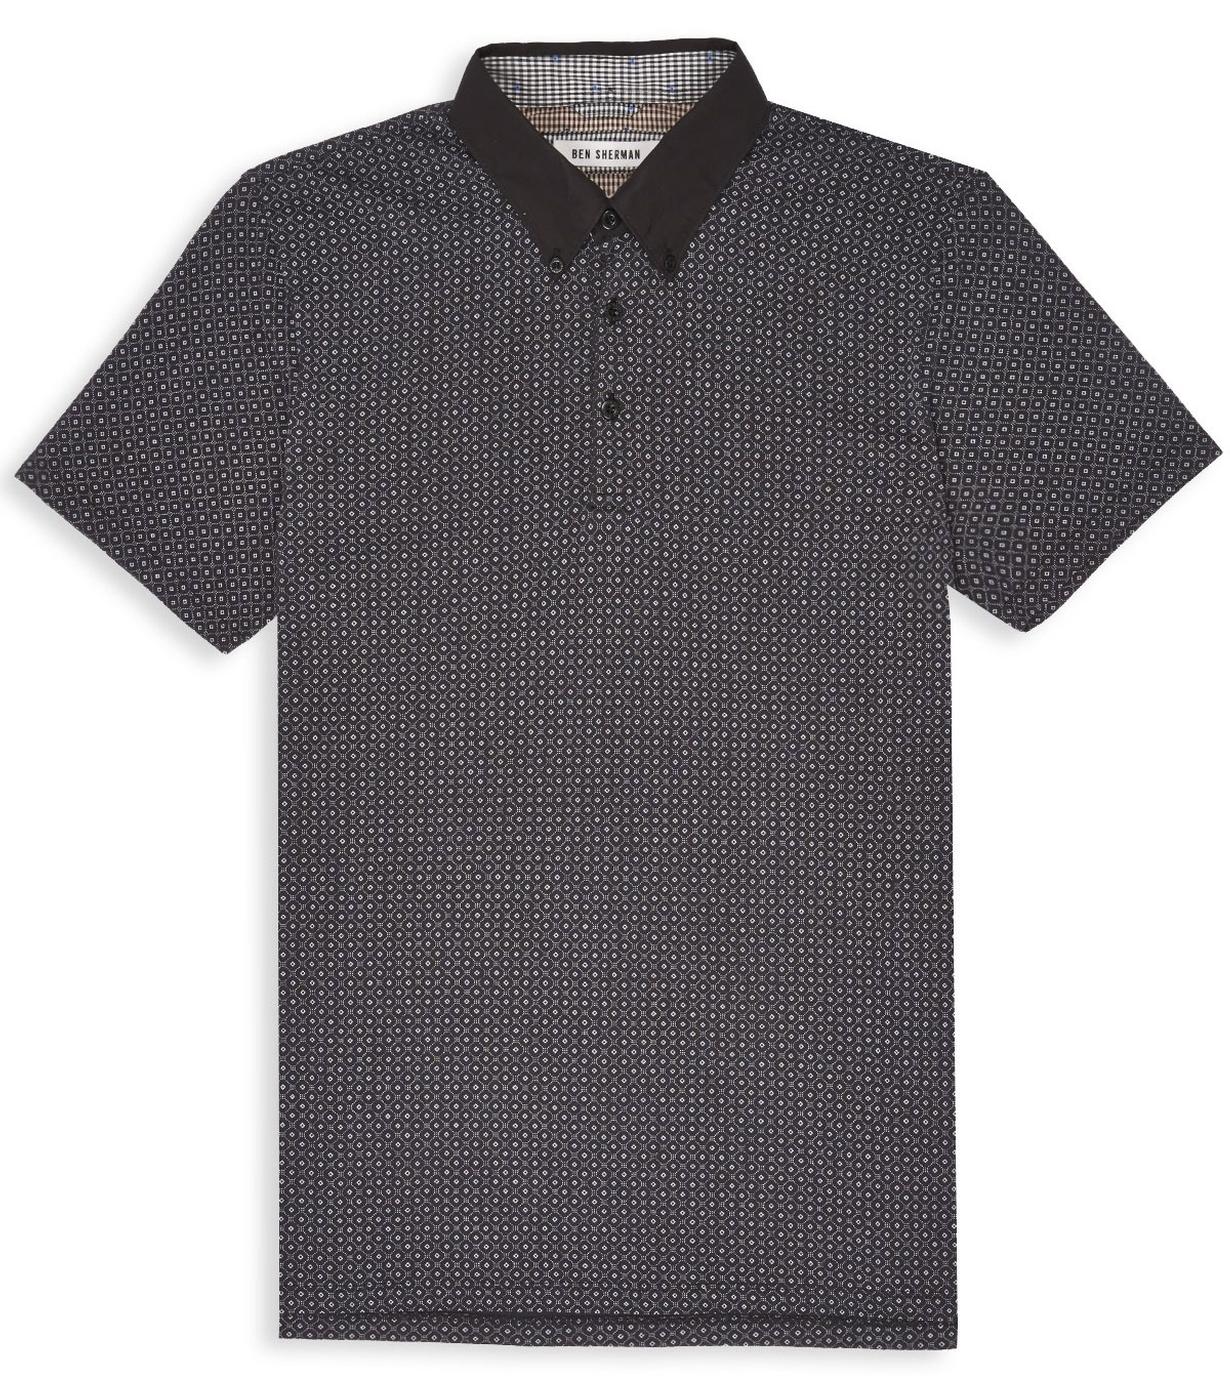 BEN SHERMAN Retro Mod Geometric Tile Print Polo Shirt in Black